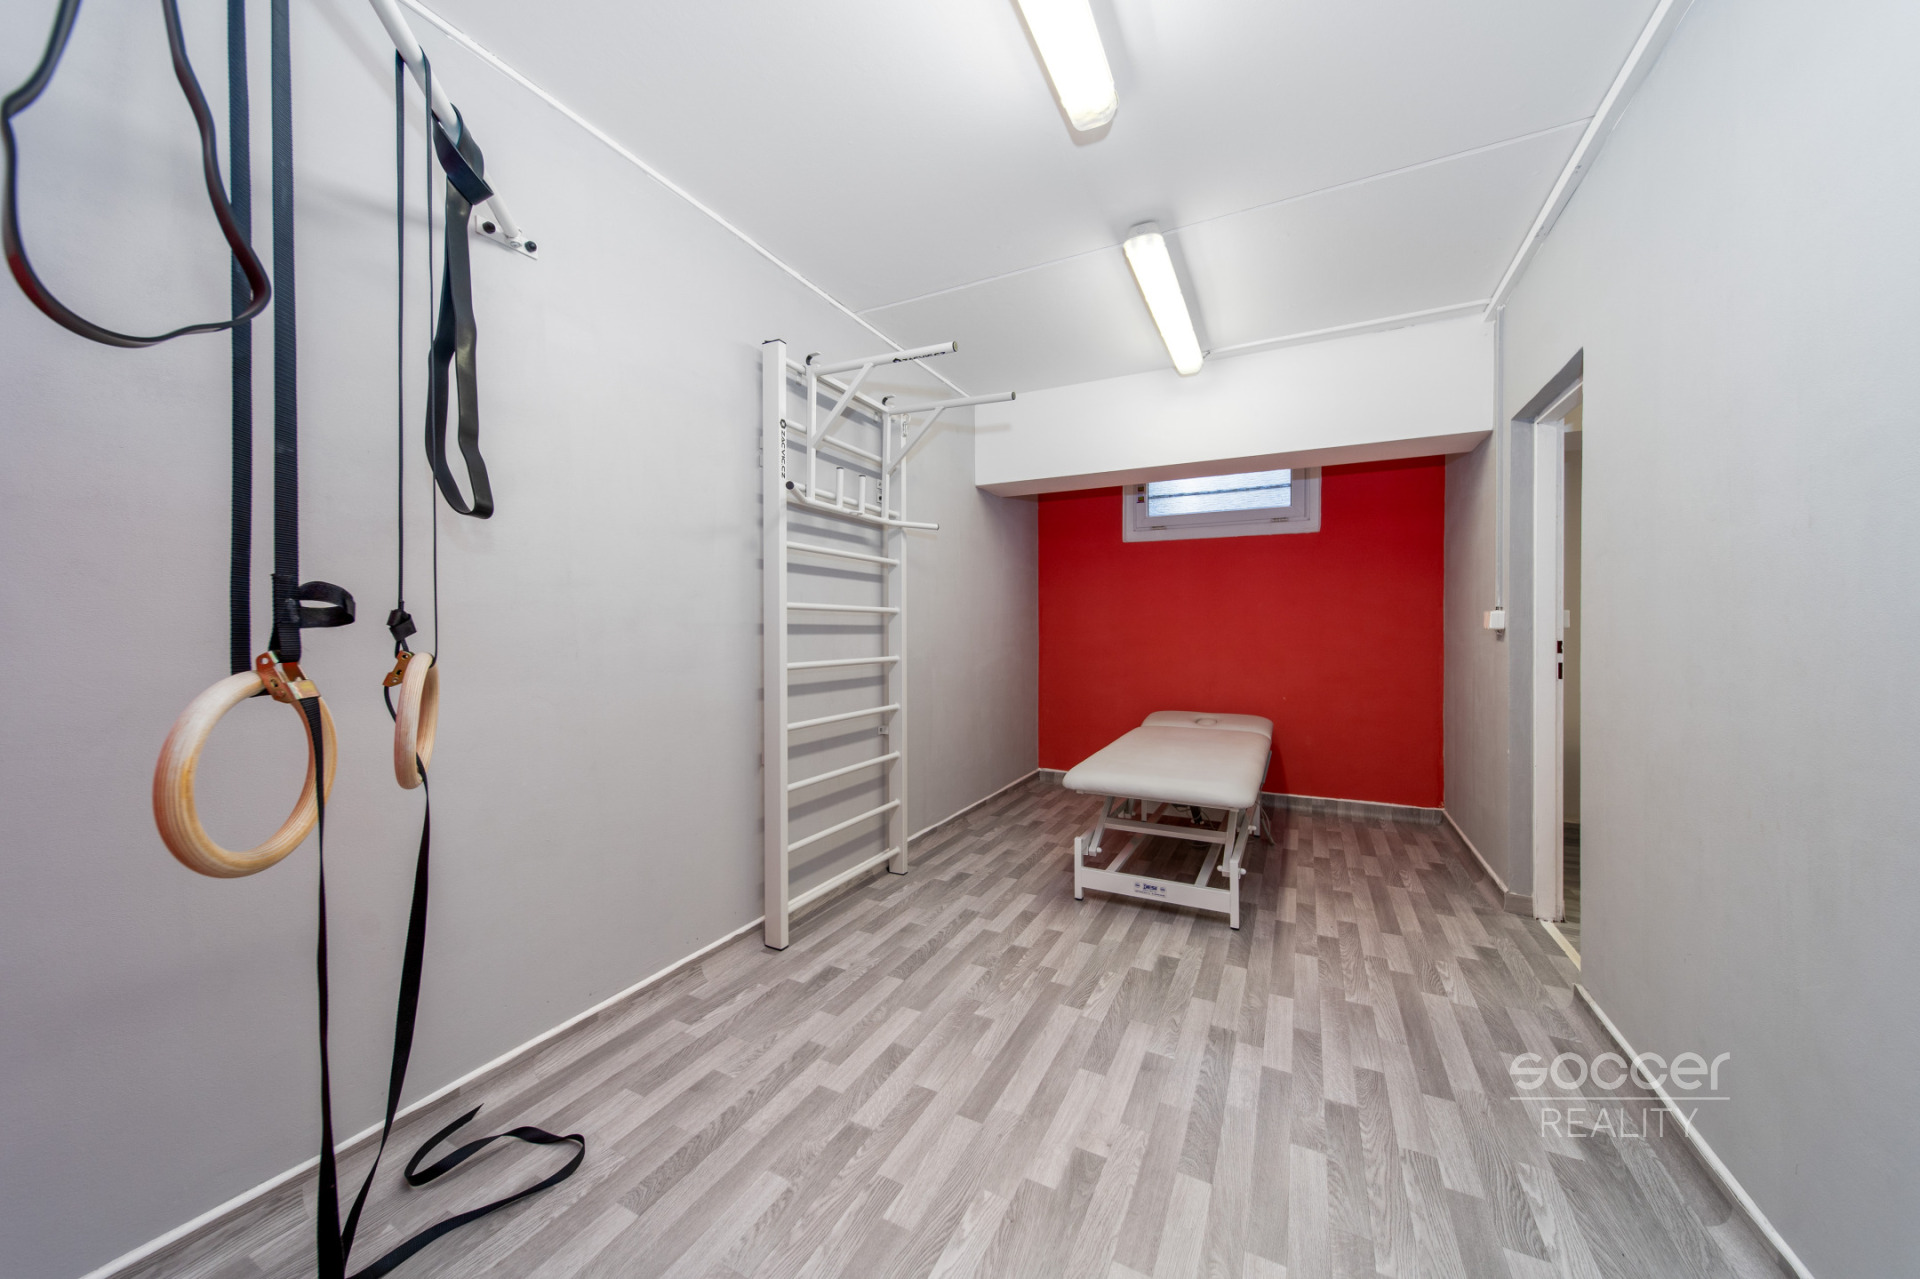 Prodej nebytových prostor o výměře 77,4 m2, ul. Bryksova, Praha 9 – Černý Most.